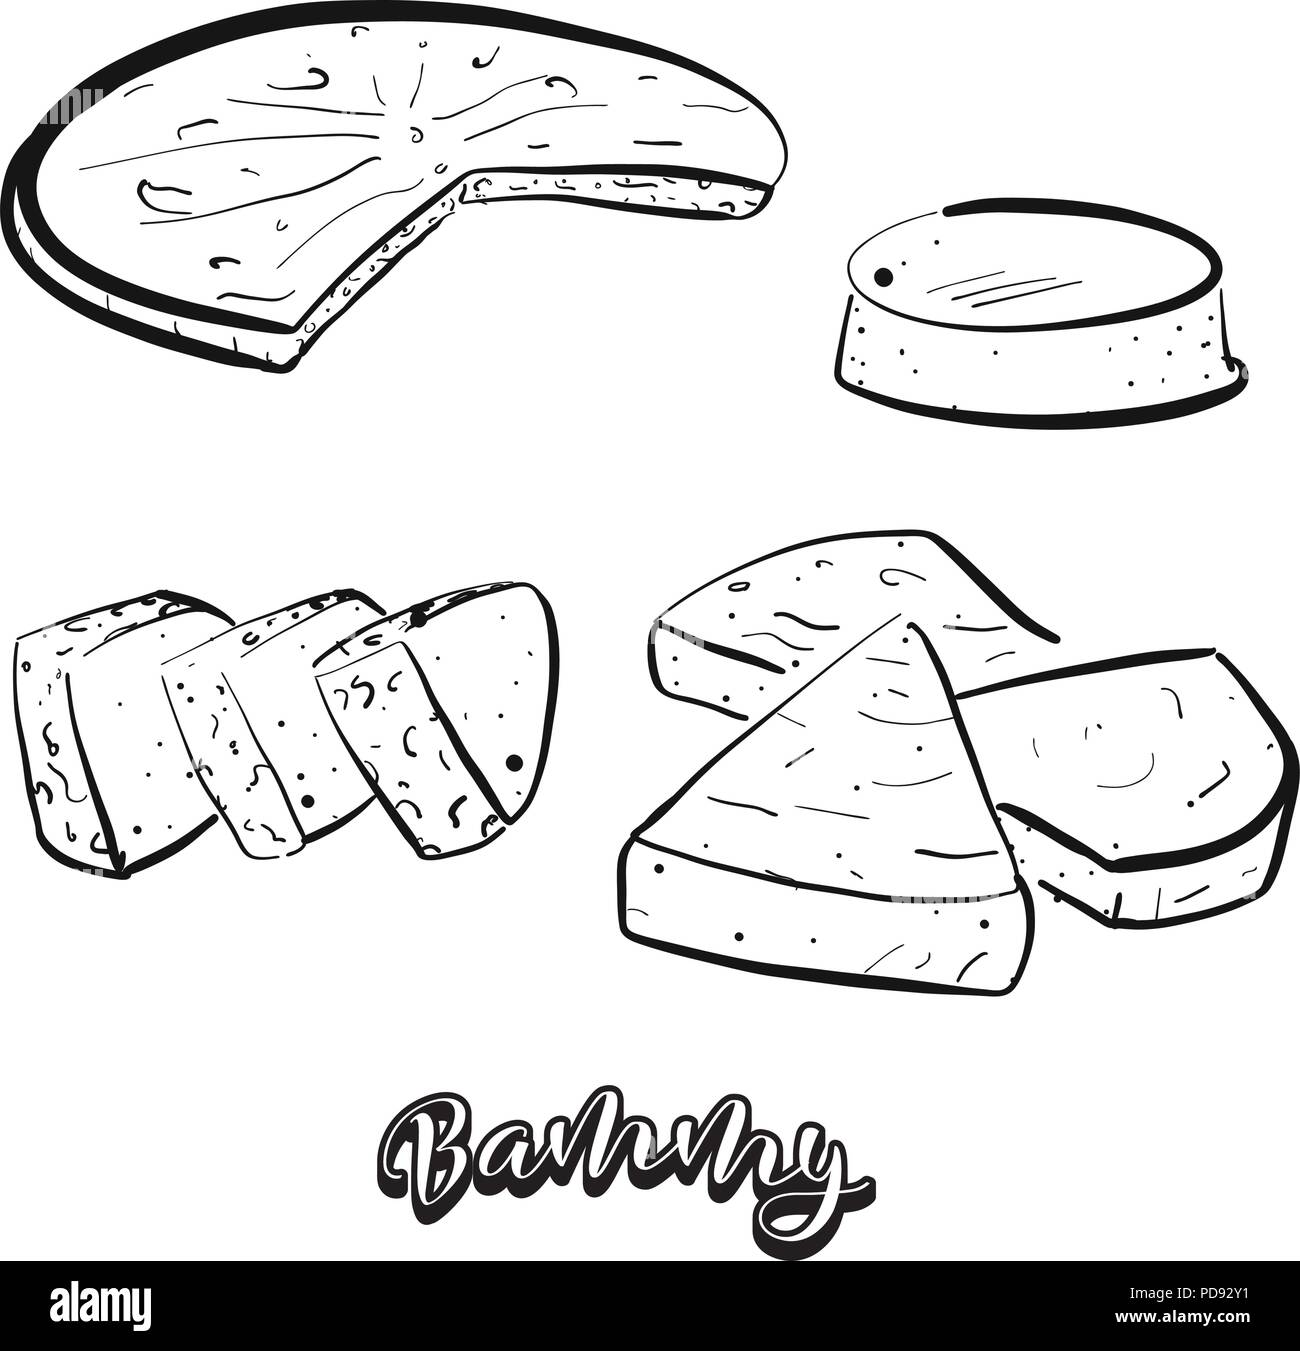 Croquis dessinés à la main de pain bammy. De dessin vectoriel, tous faits de nourriture, habituellement connu en Jamaïque. Illustration du pain series. Illustration de Vecteur